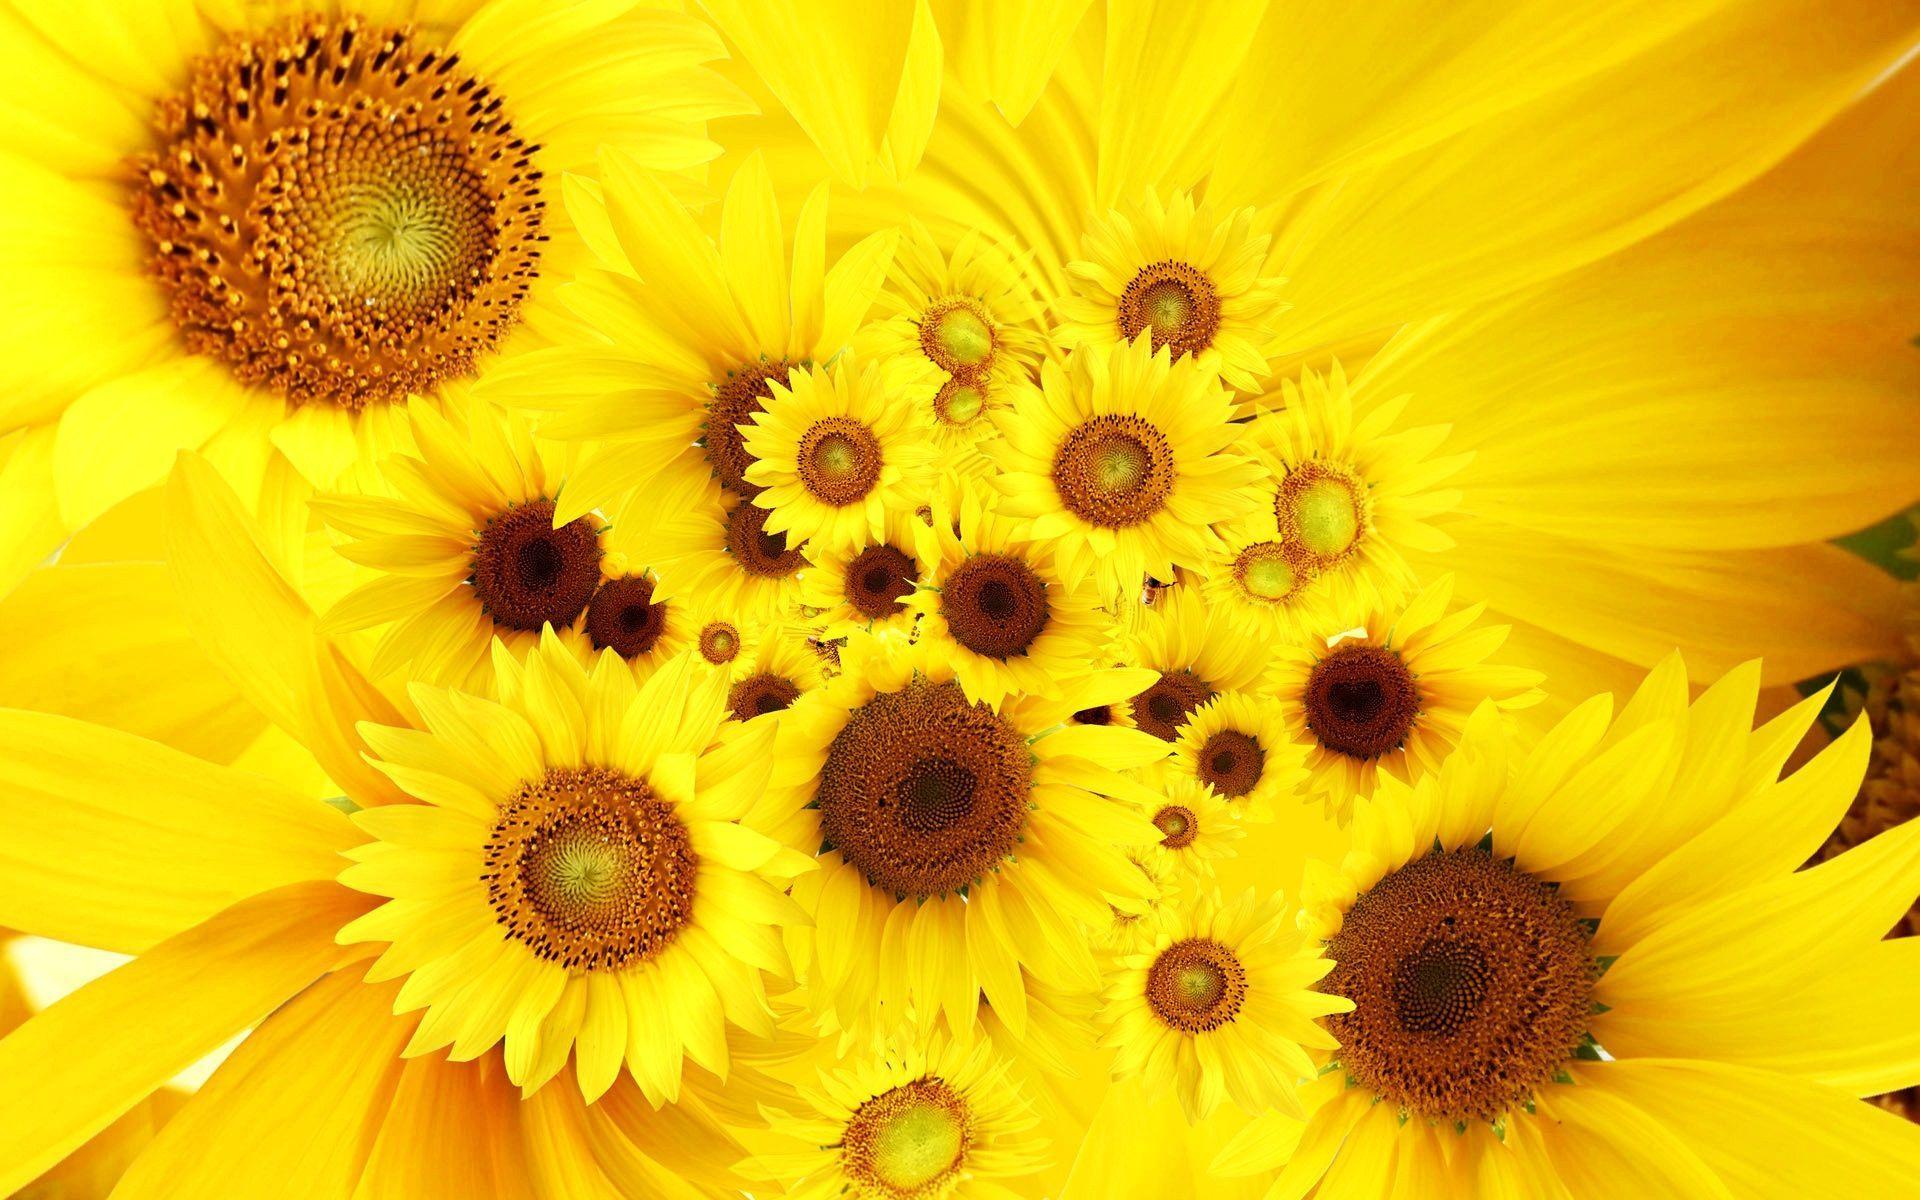 Hãy khám phá bức tranh về hoa hướng dương, với những cánh hoa vàng rực rỡ tràn đầy niềm vui và sự sống! (Discover the painting of sunflowers, with bright yellow petals overflowing with joy and life!)